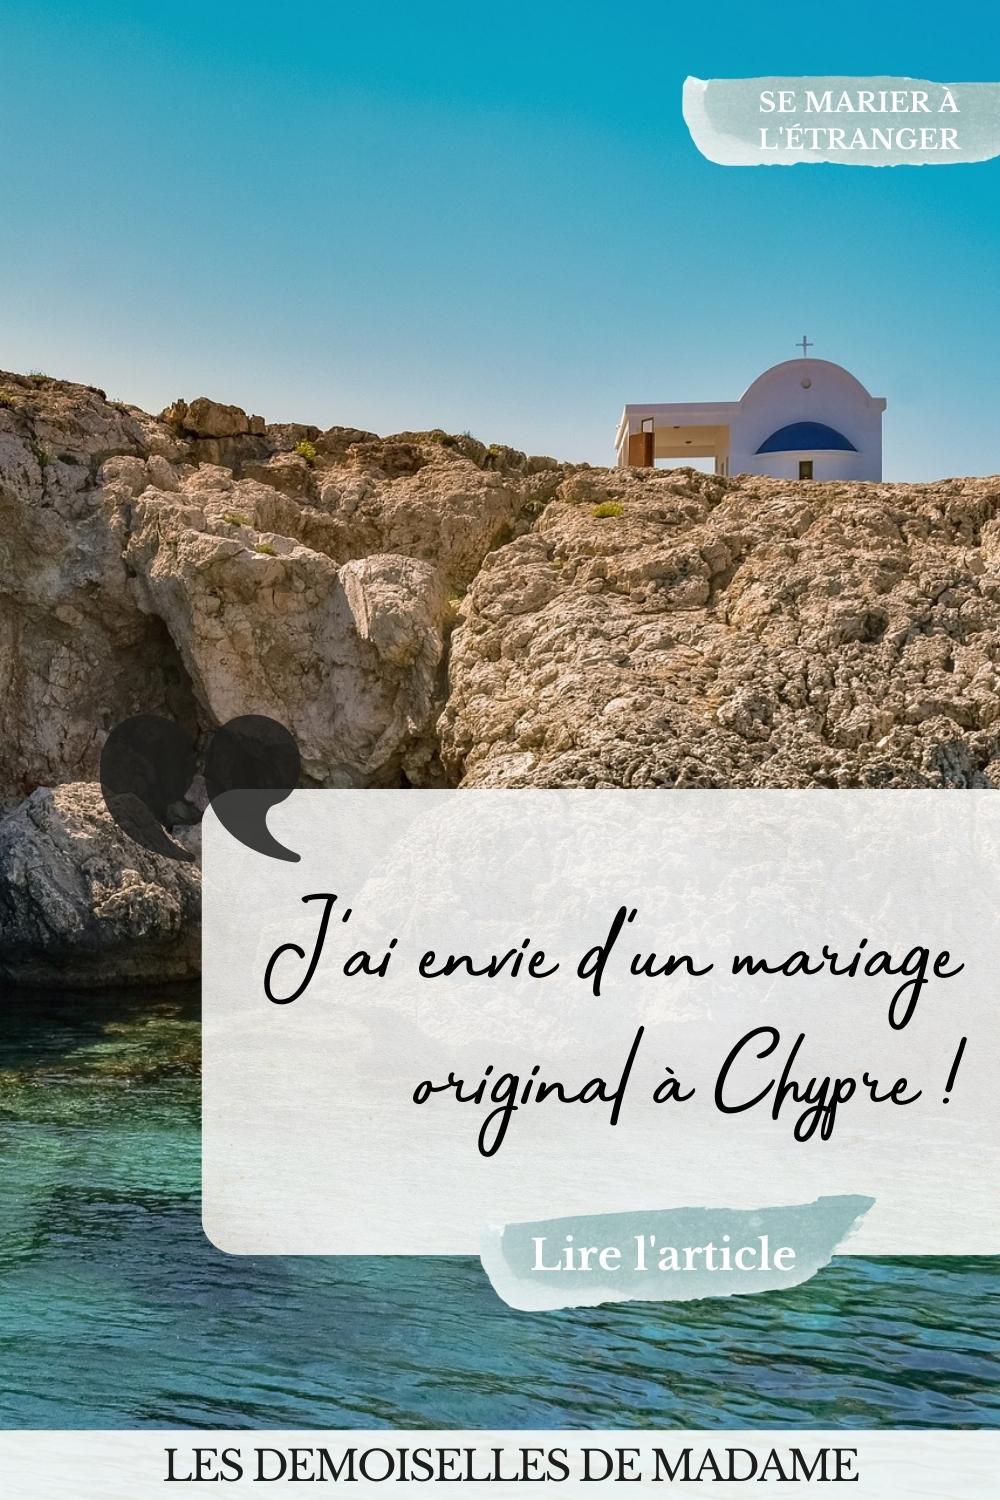 Mariage original a chypre en bord de mer